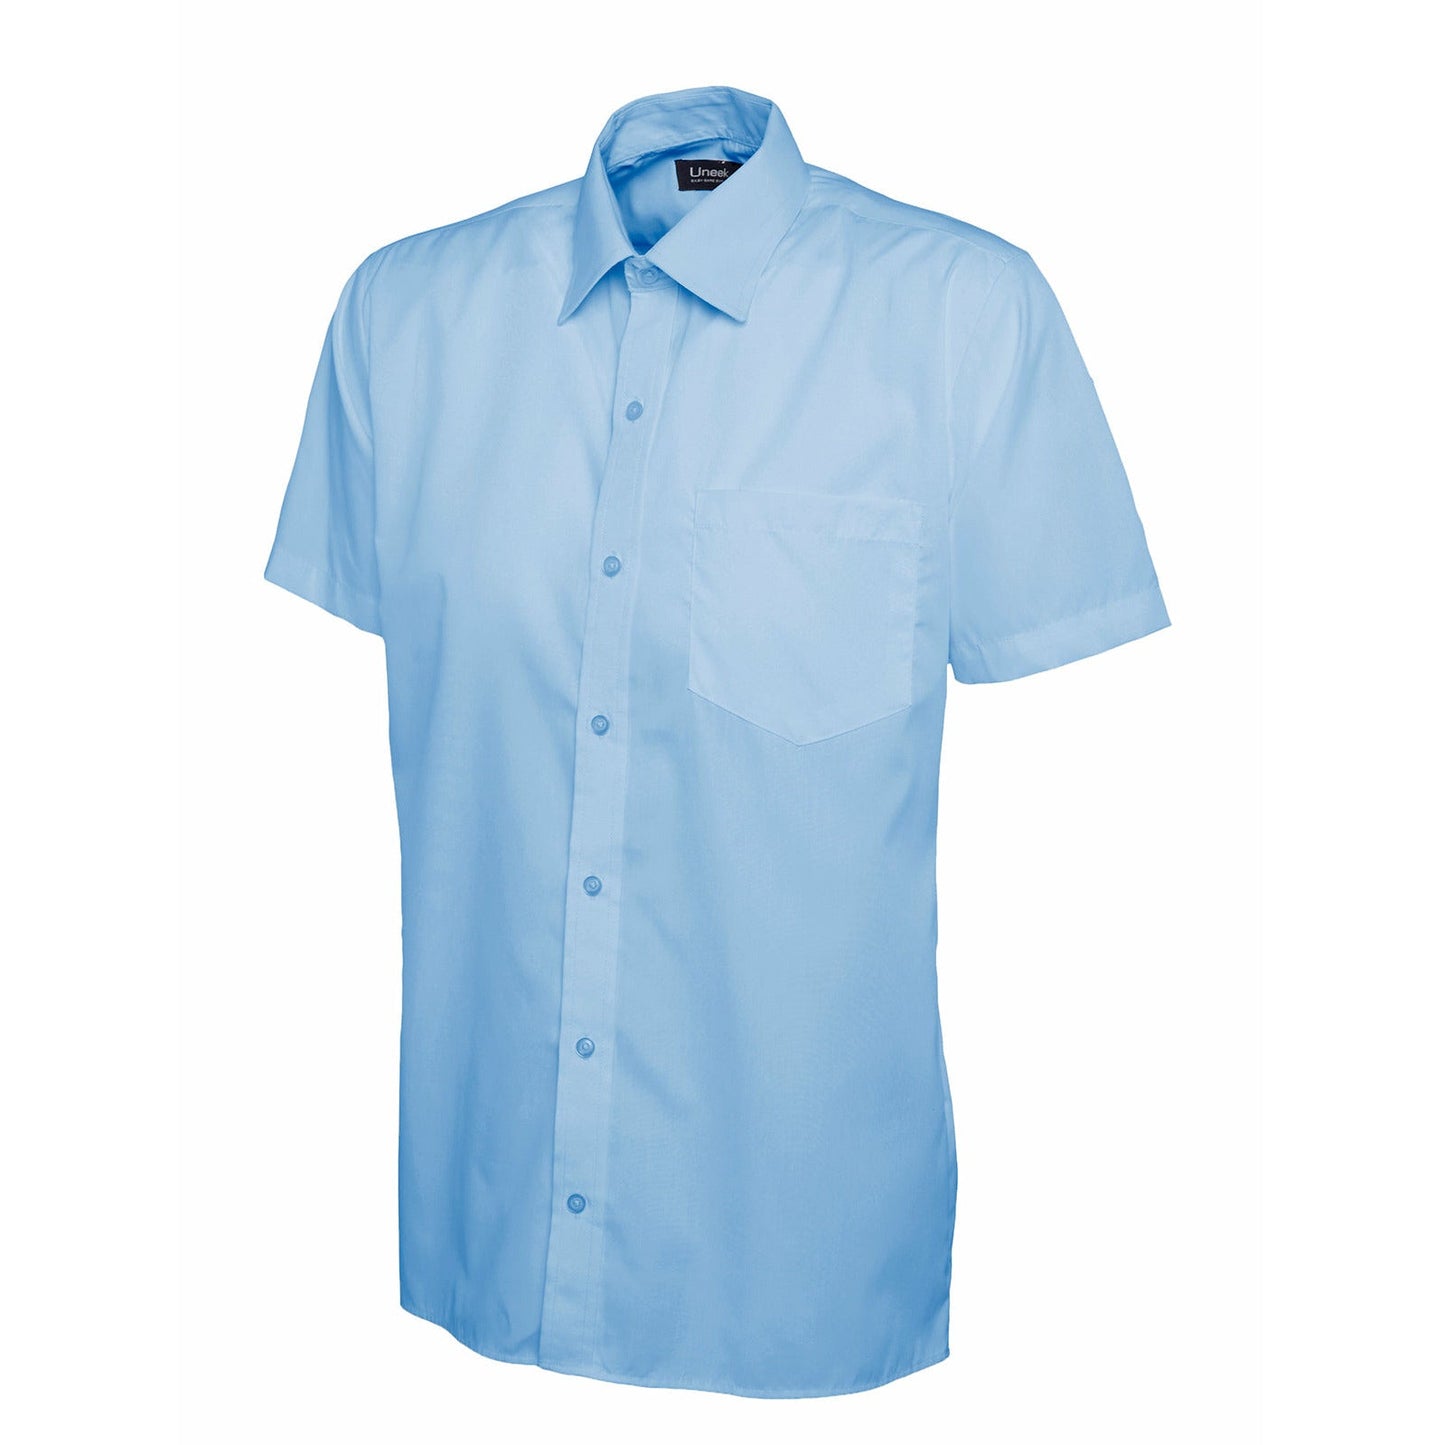 Mens Poplin Half Sleeve Shirt (17 - 19.5) - Light Blue